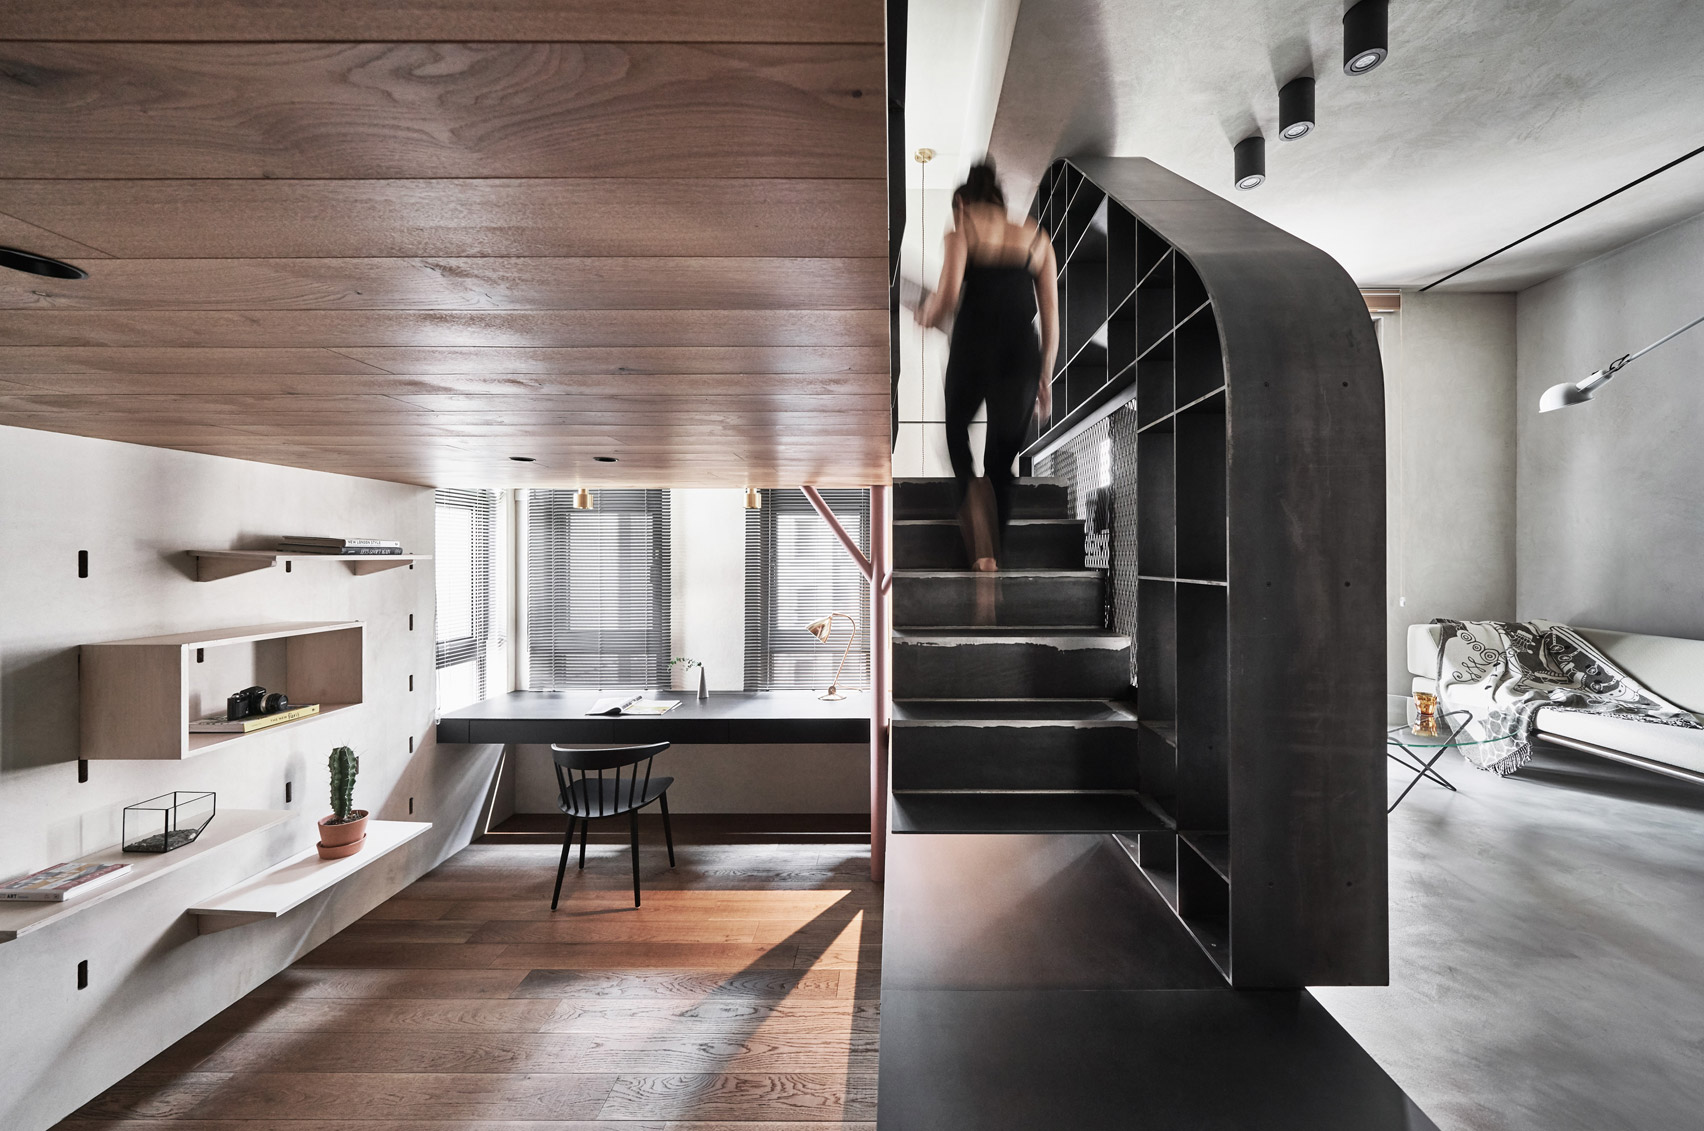 Interiors of Apartment X, designed by KC Design Studio